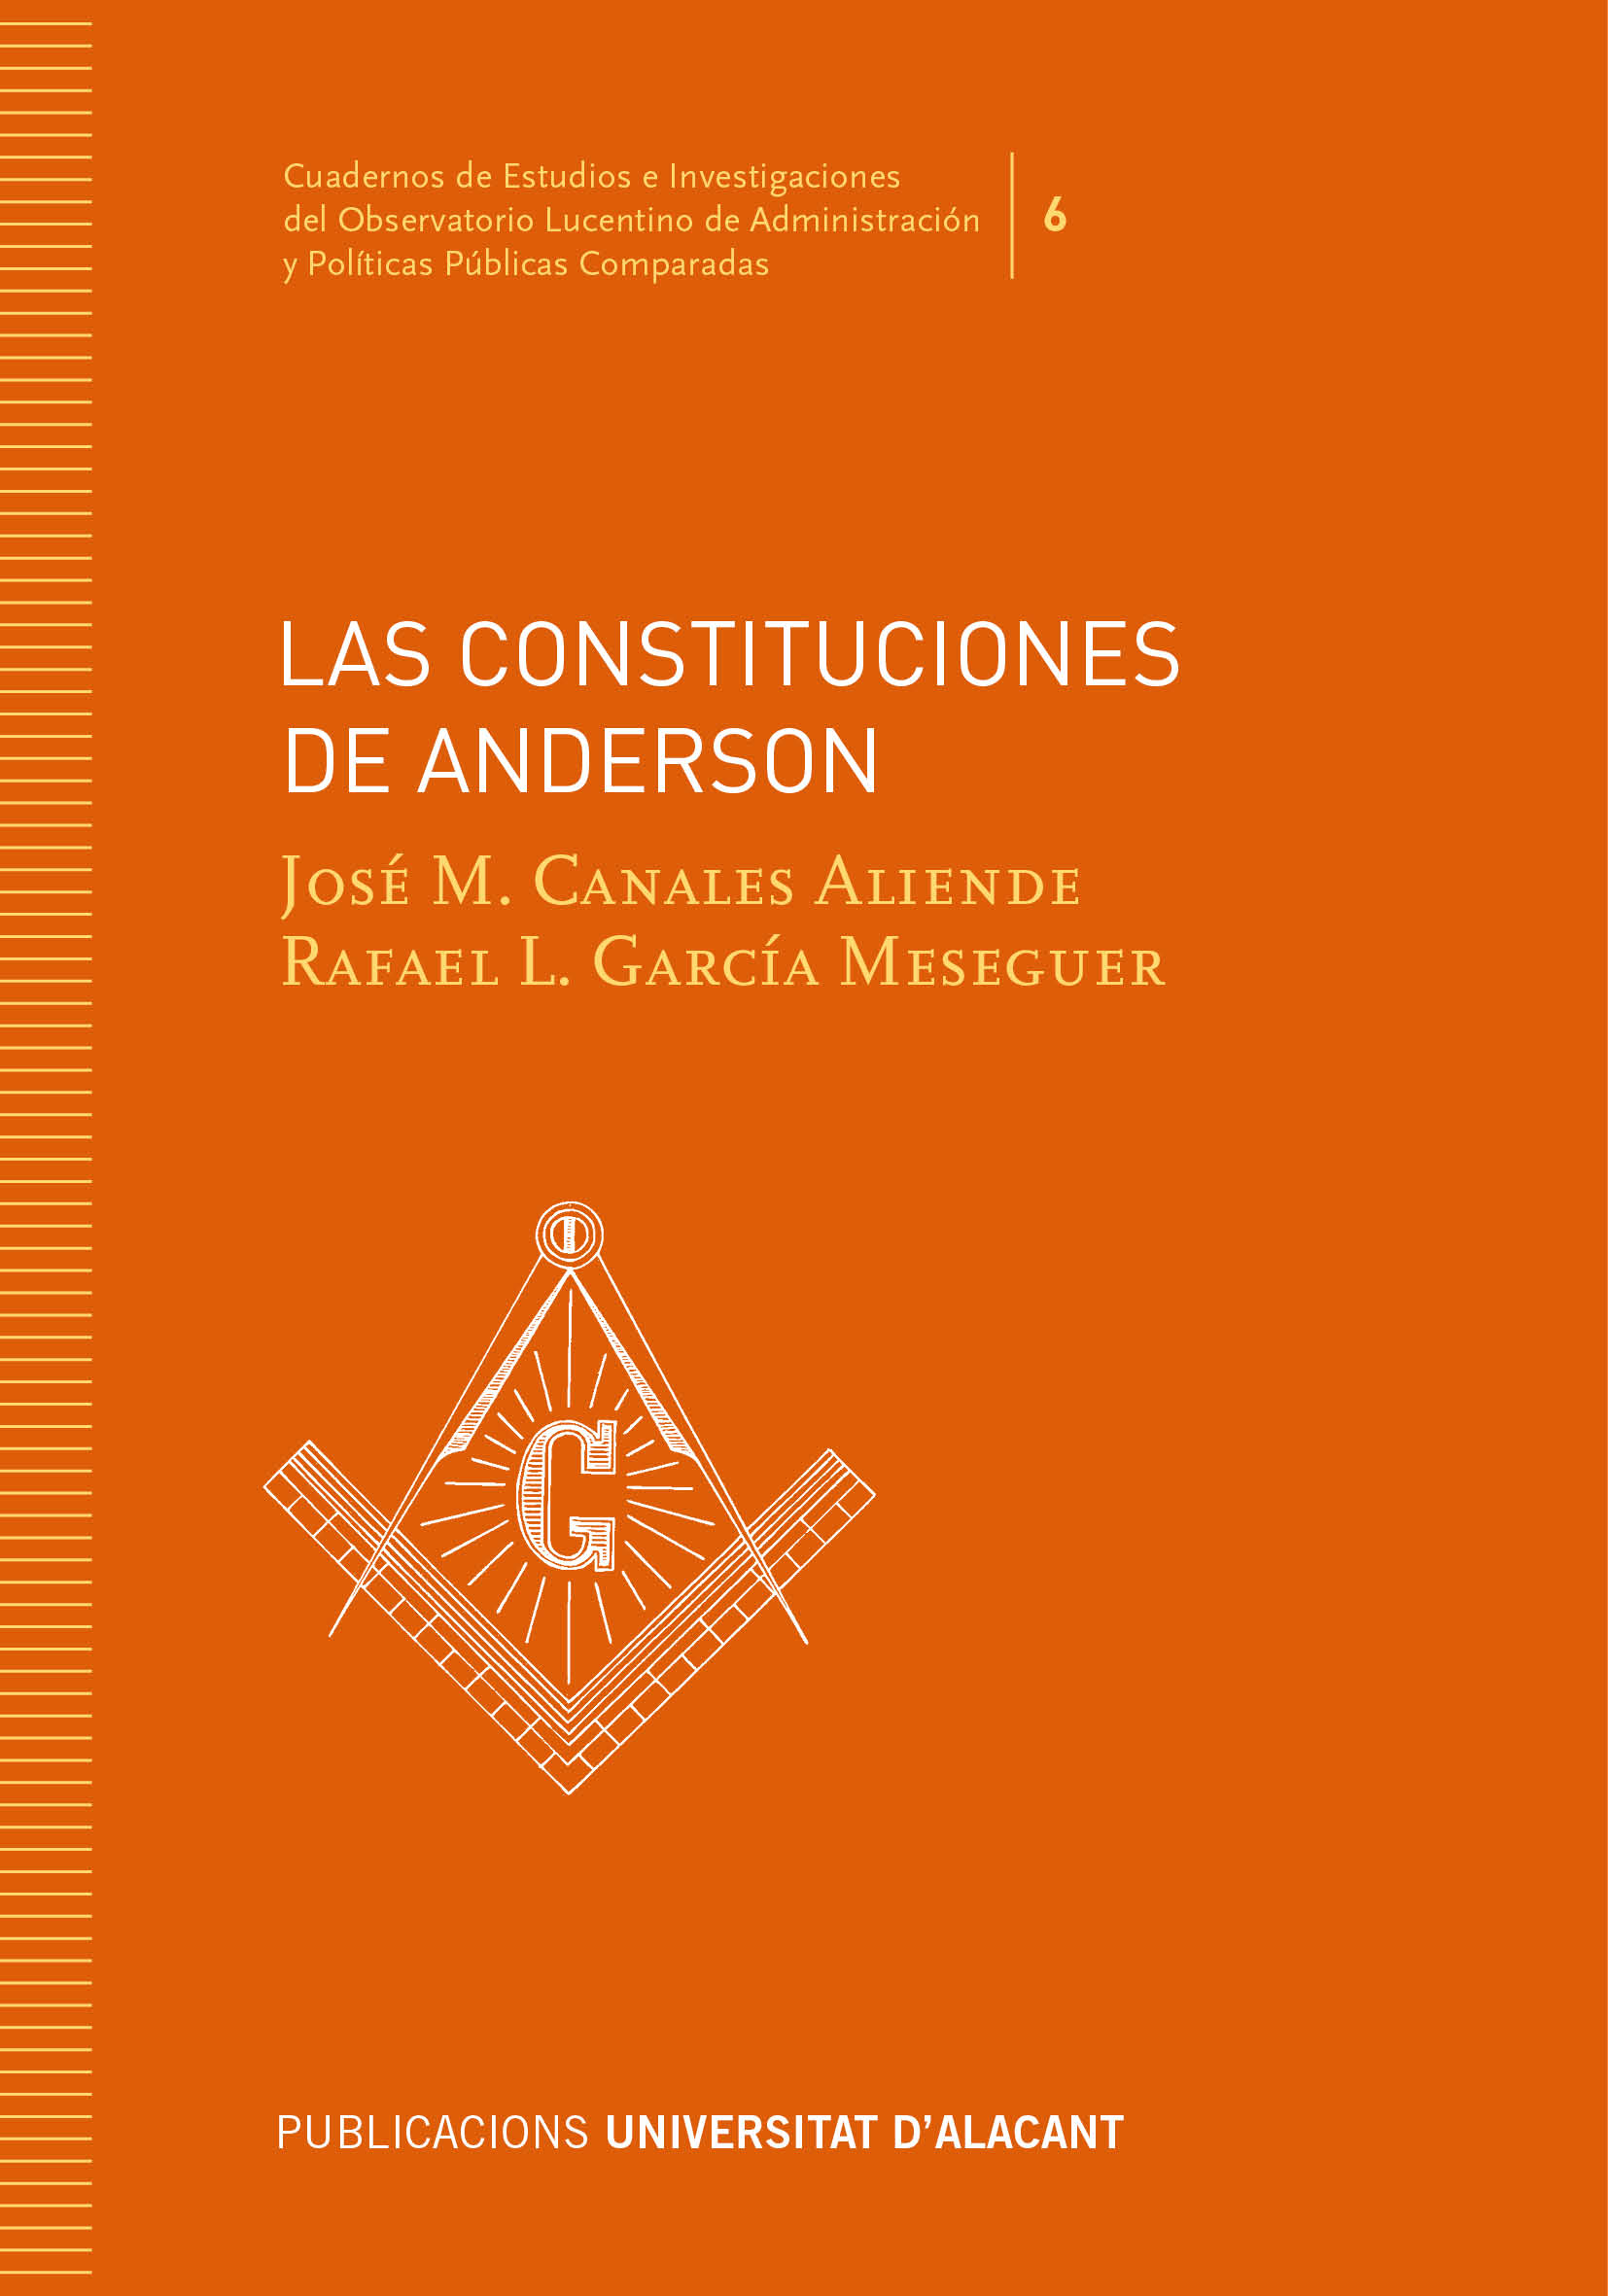 Las Constituciones de Anderson